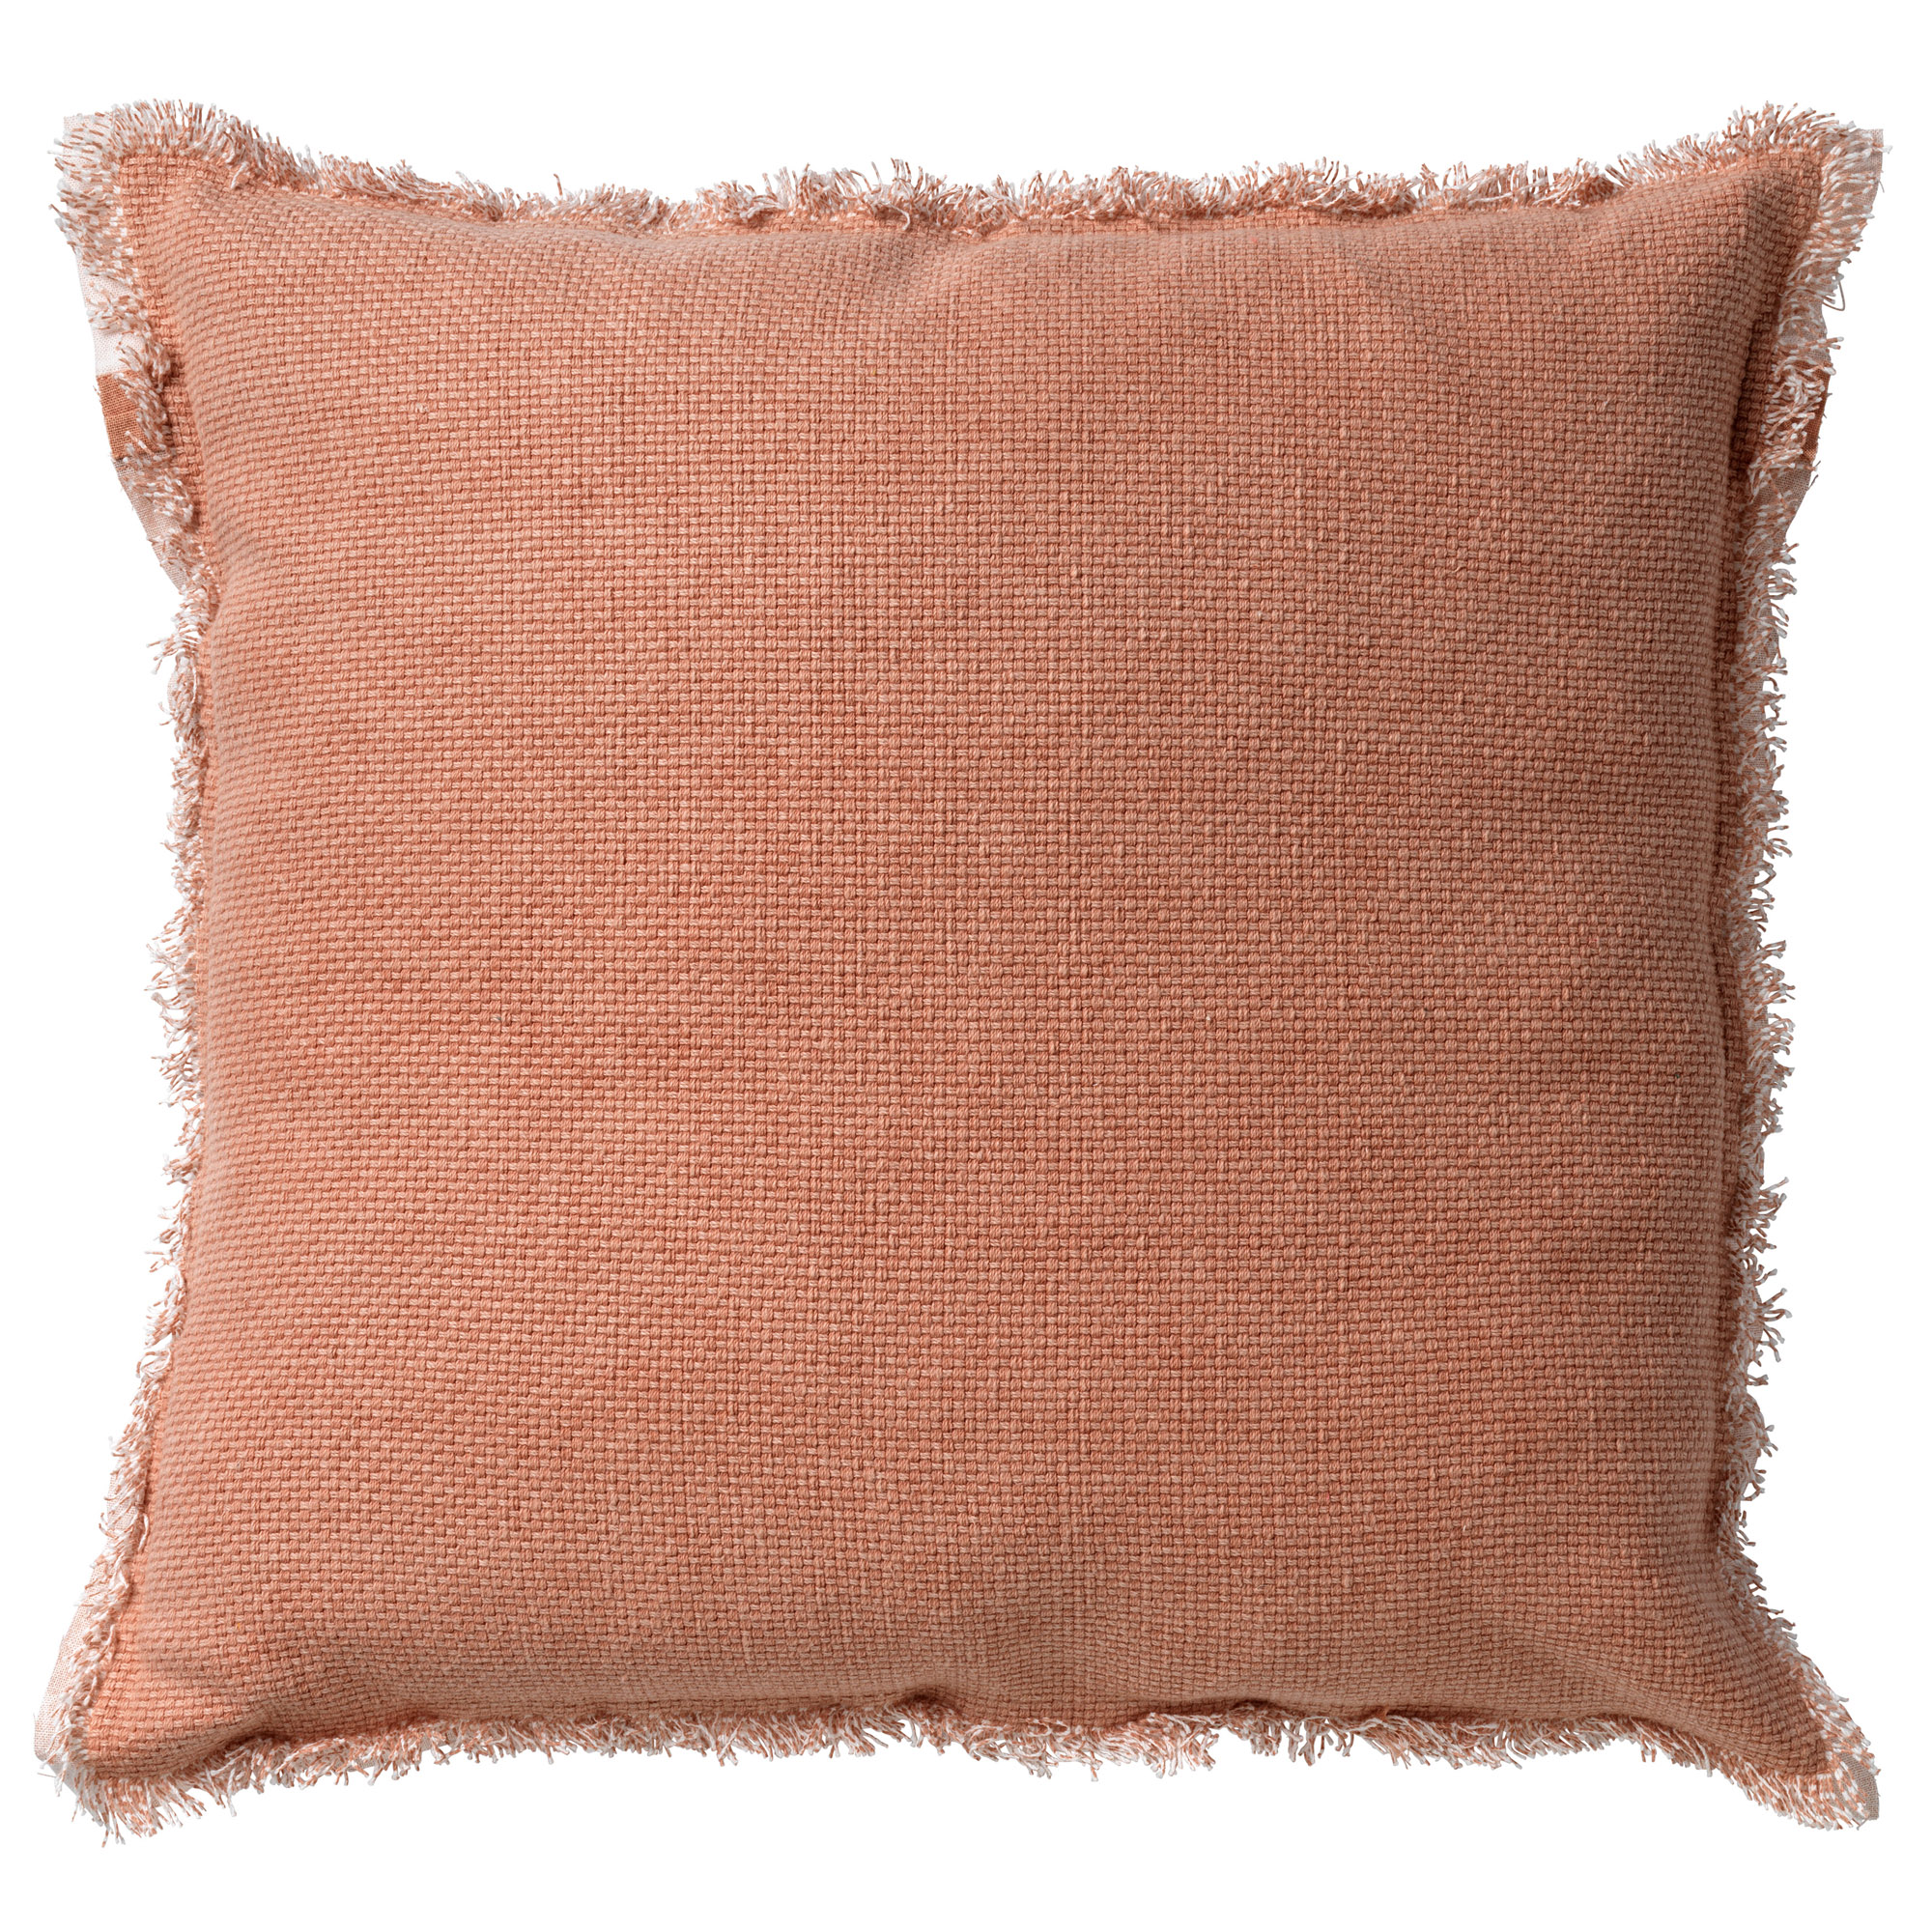 BURTO - Sierkussen 45x45 cm - gewassen katoen - Muted Clay - roze